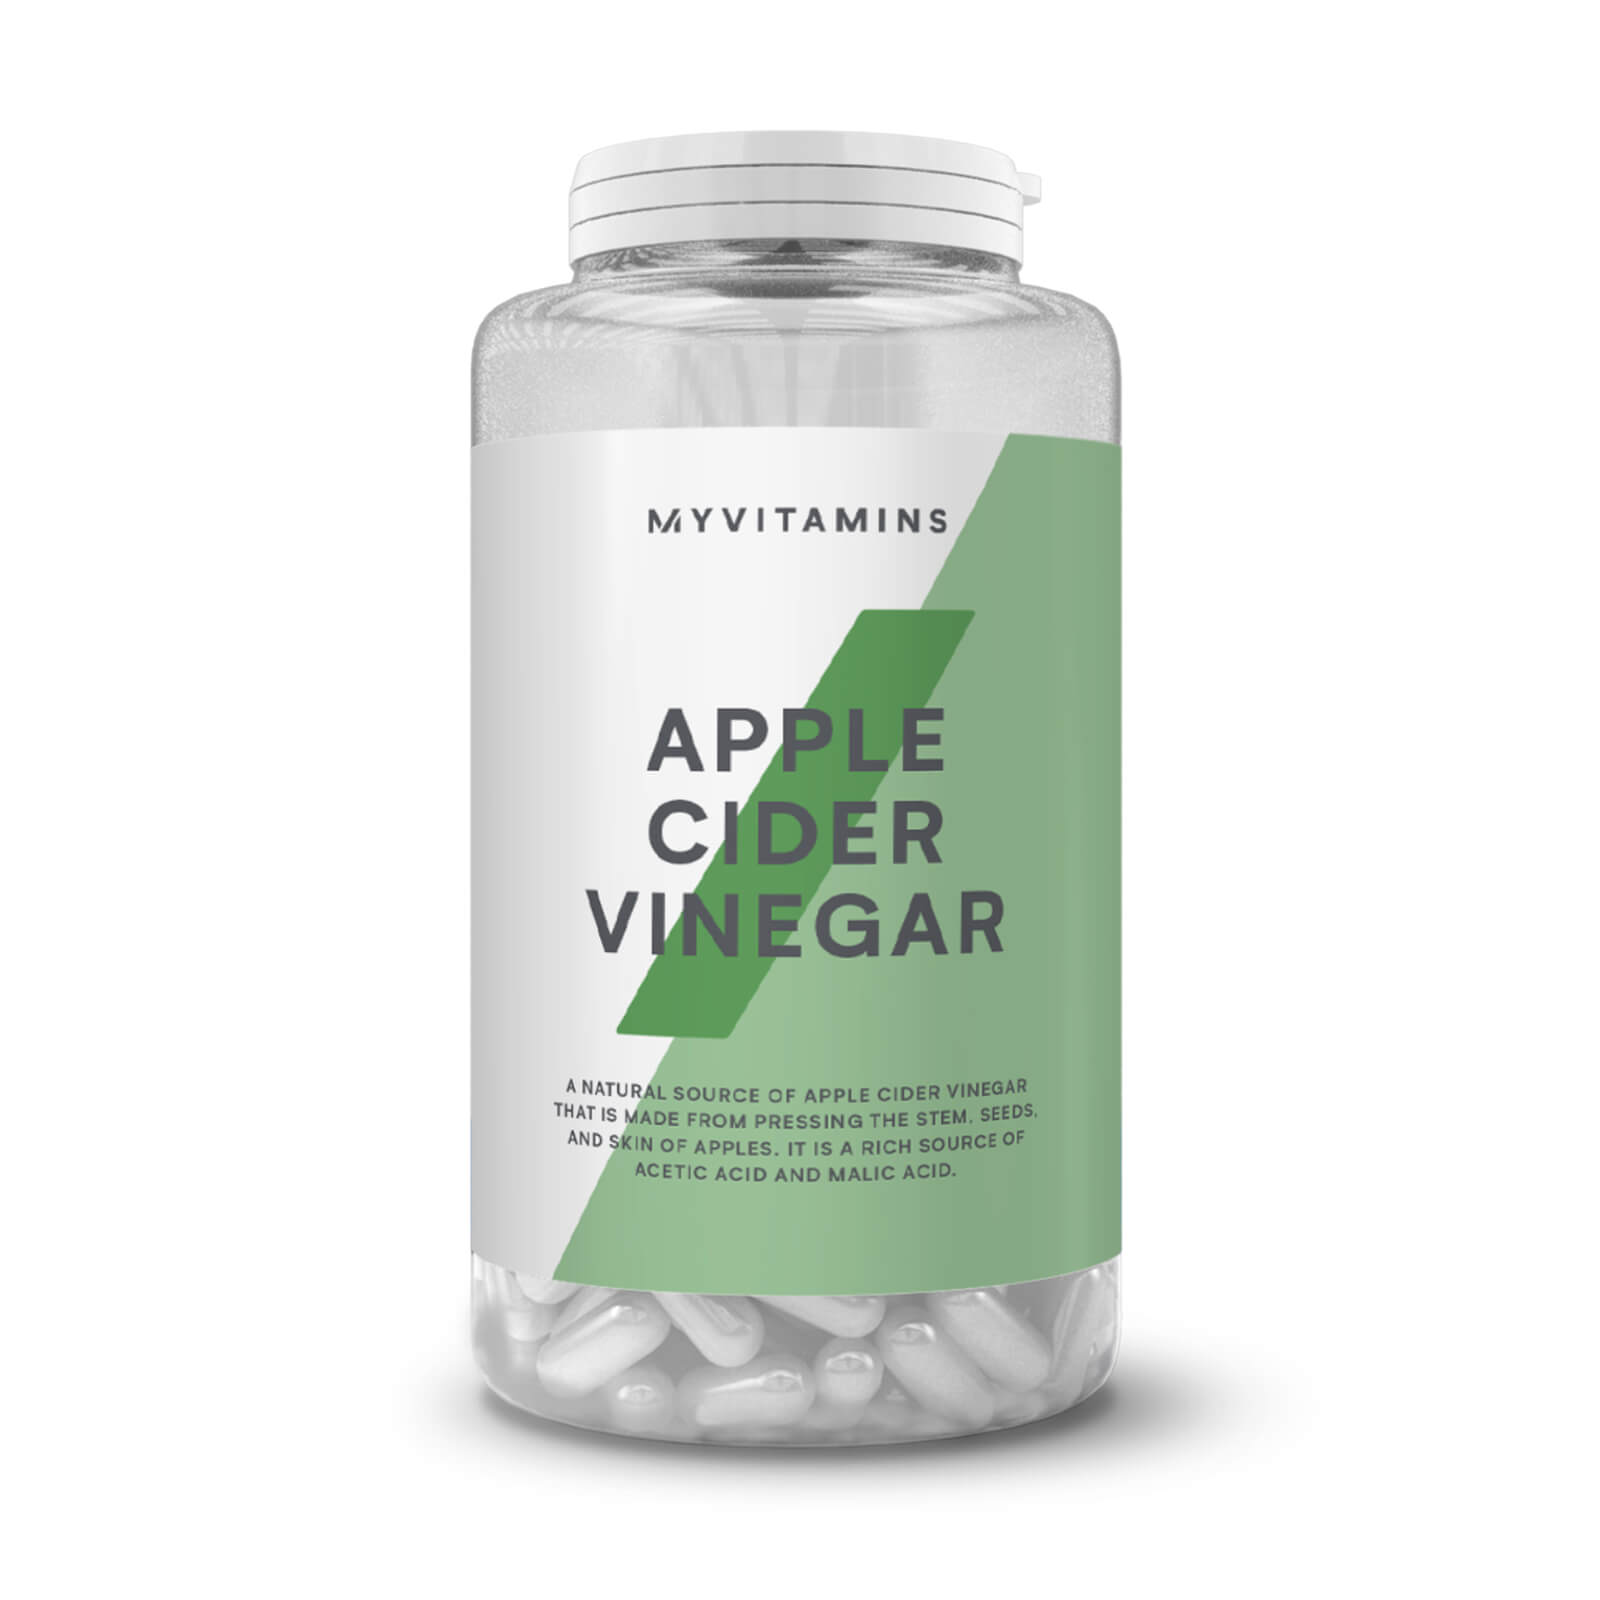 Myvitamins Apple Cider Vinegar